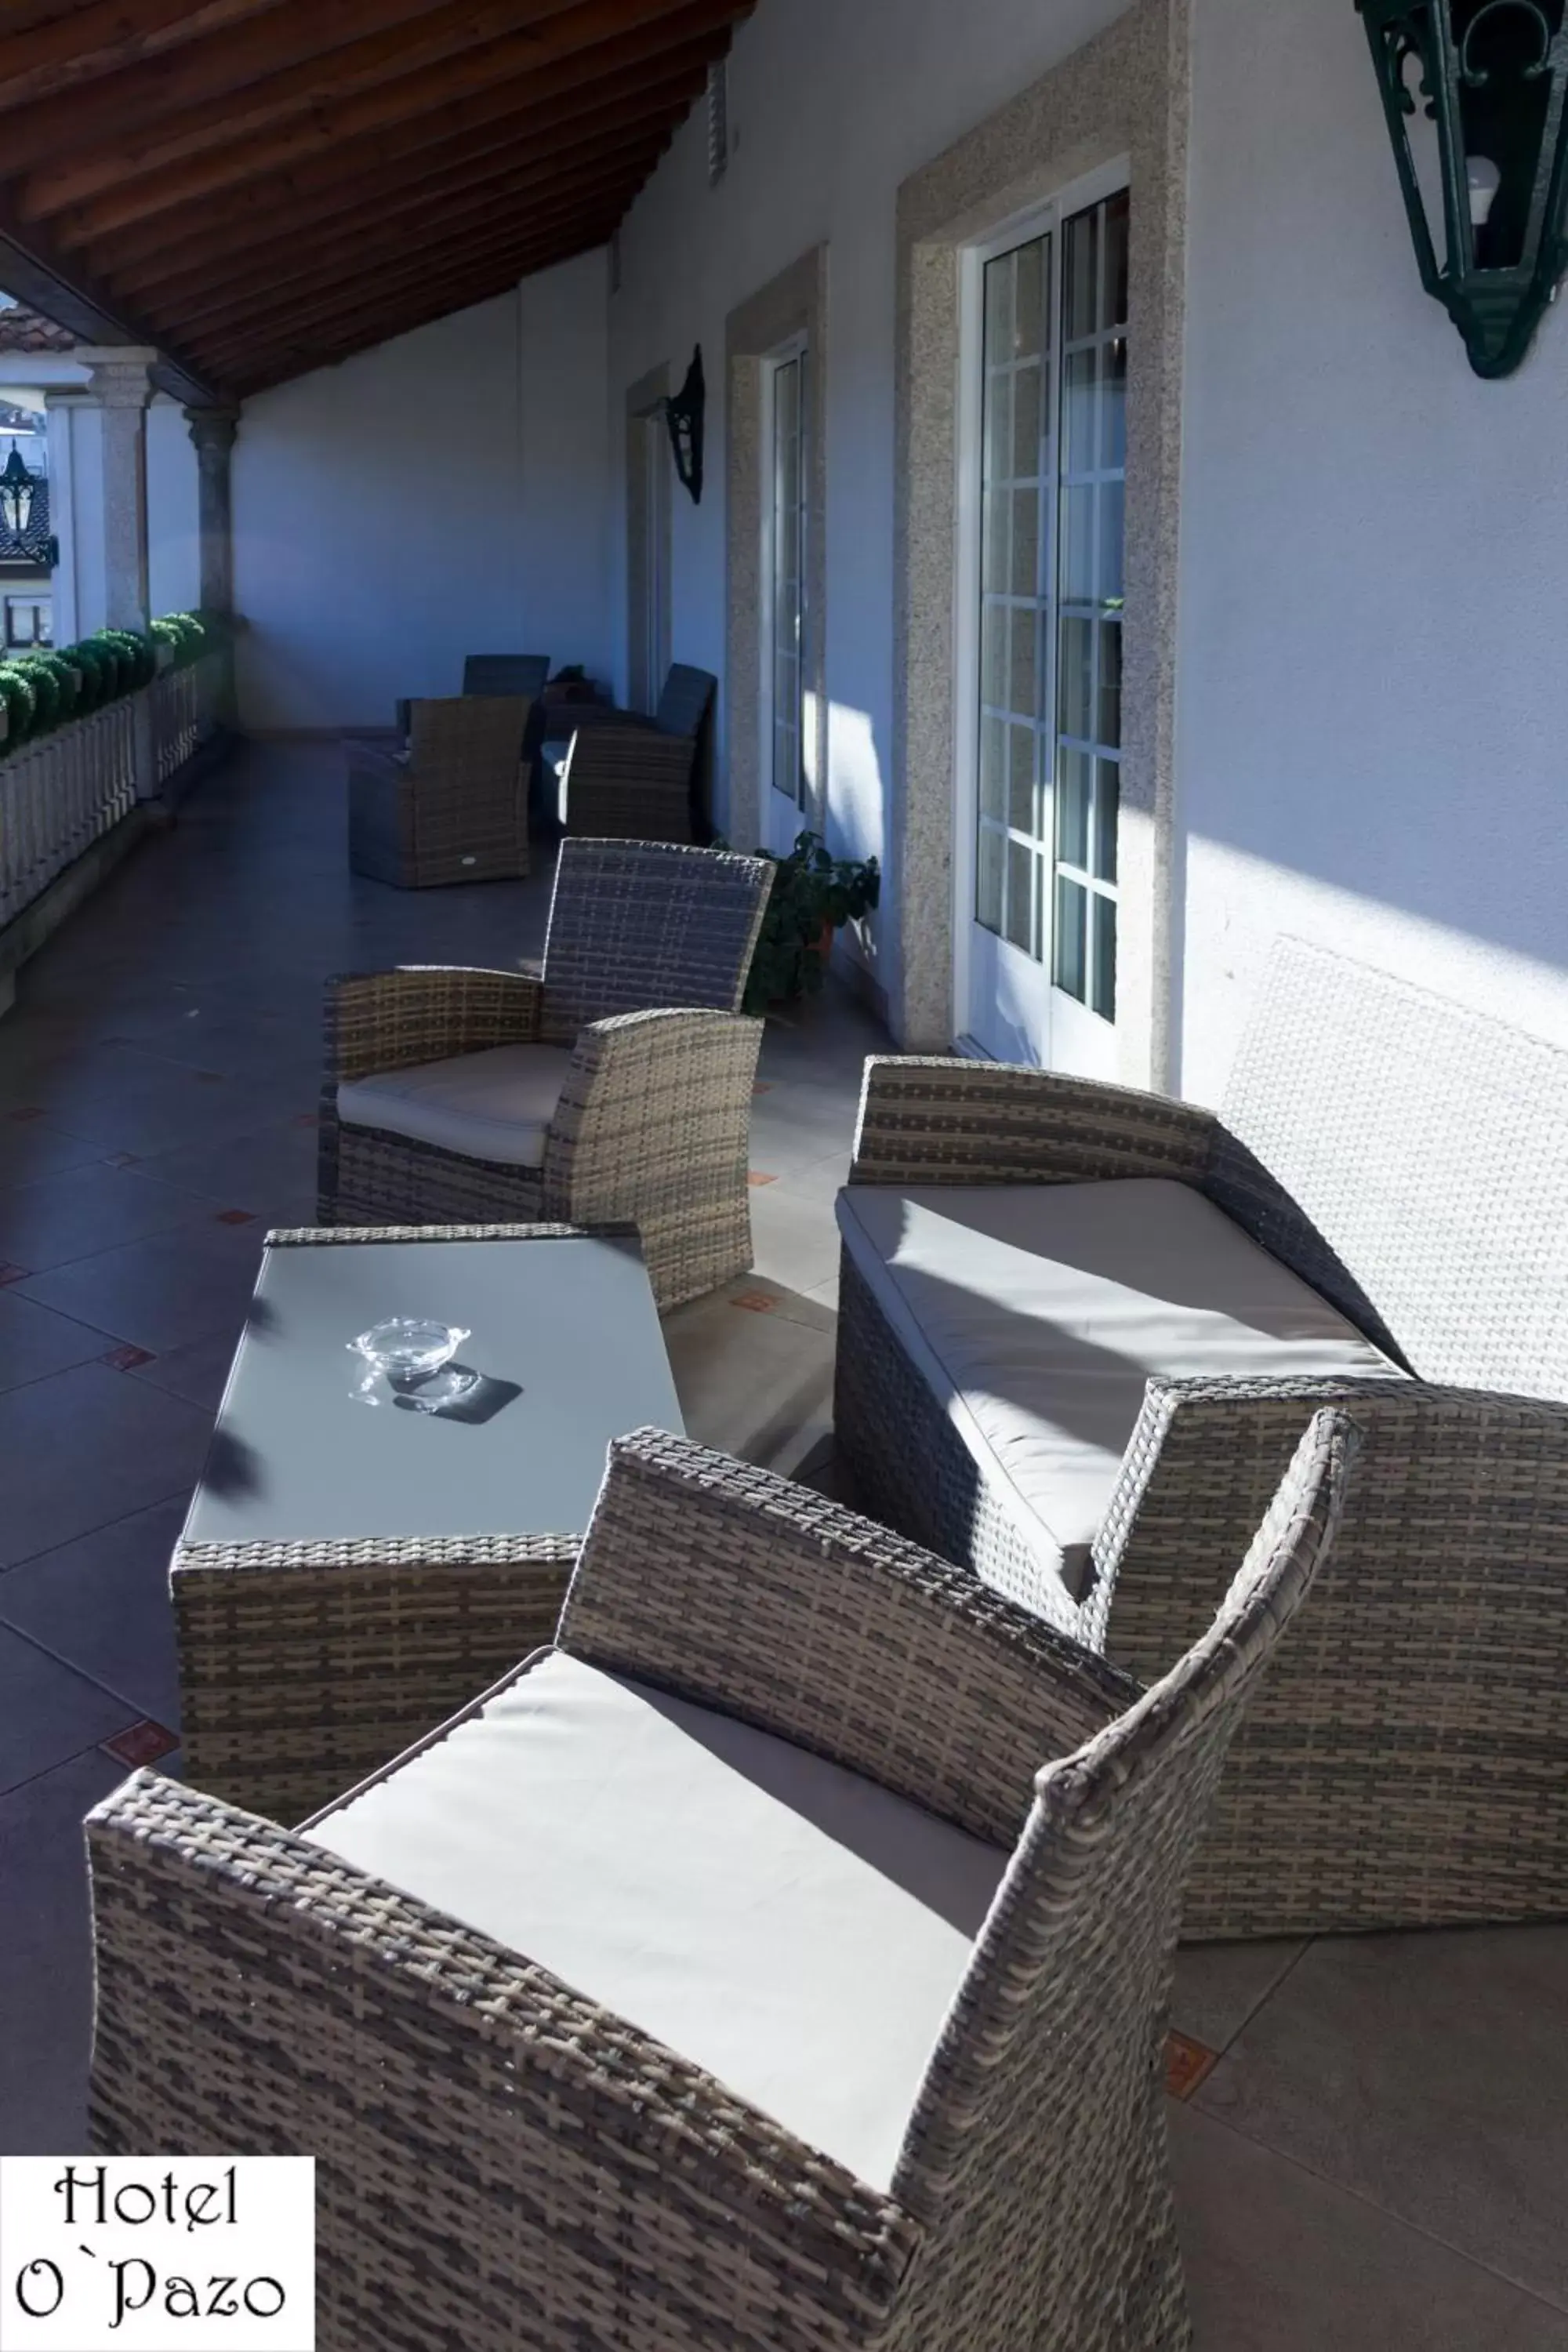 Balcony/Terrace in Hotel O'Pazo